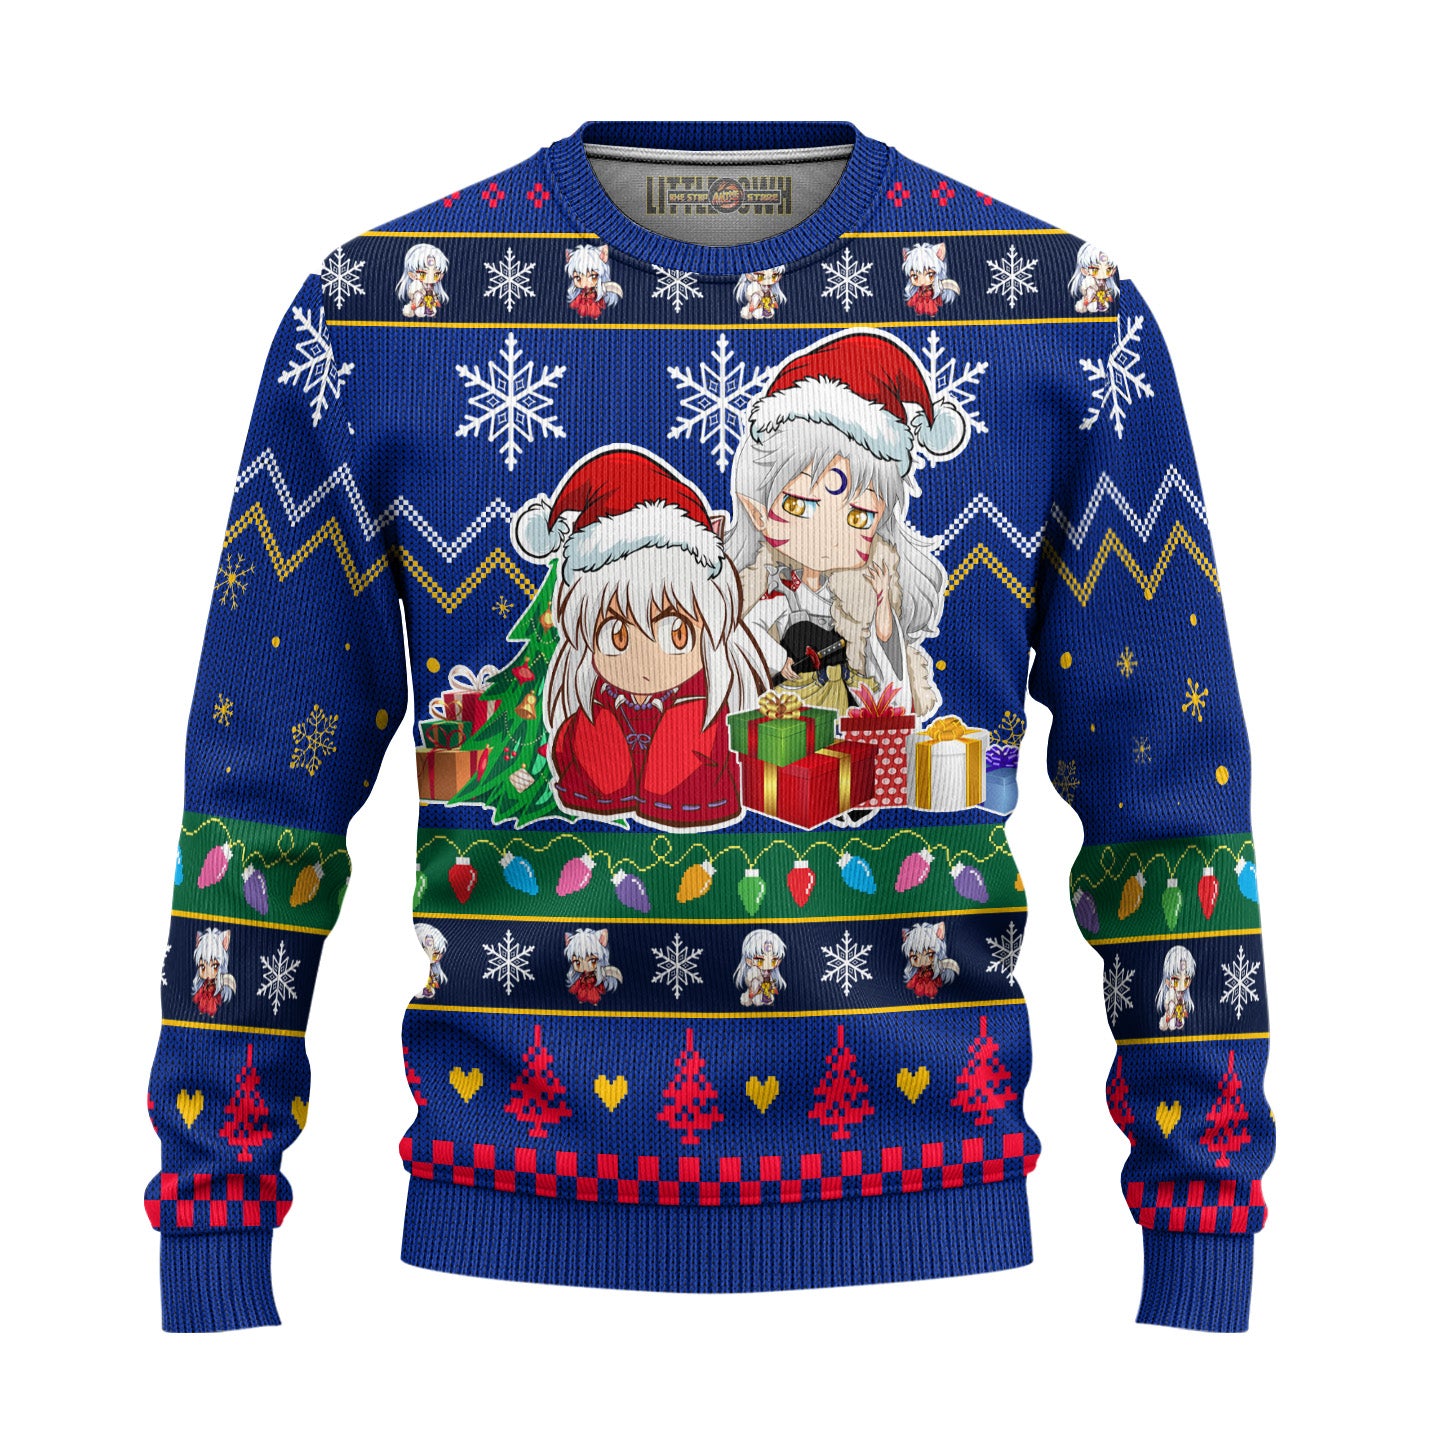 Inuyasha x Sesshomaru Anime Ugly Christmas Sweater InuYasha Gift For Fans